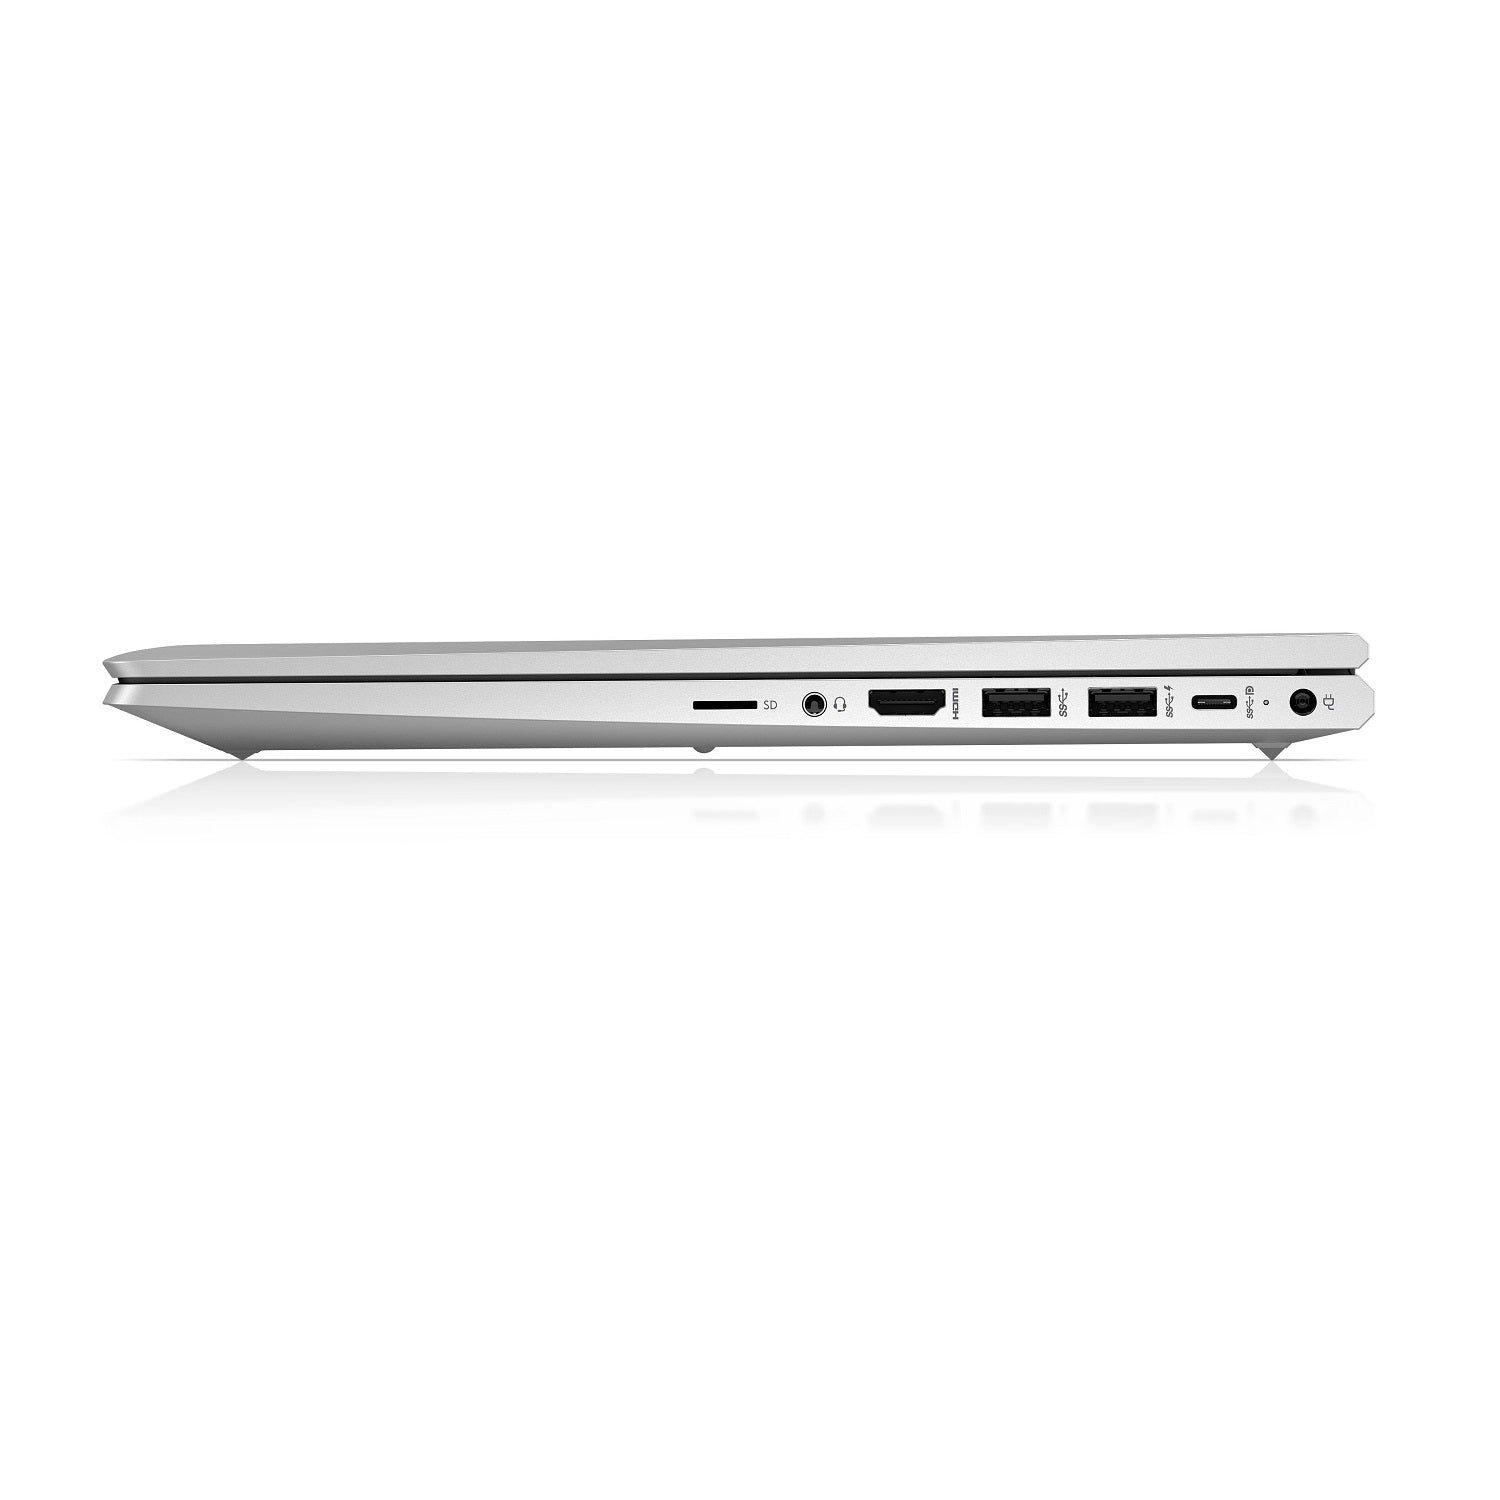 laptop hp probook 450 g8 i7 11va generación ram 8gb disco sólido 512gb 15.6 pulgadas windows 10 pro garantía 1 año color silver